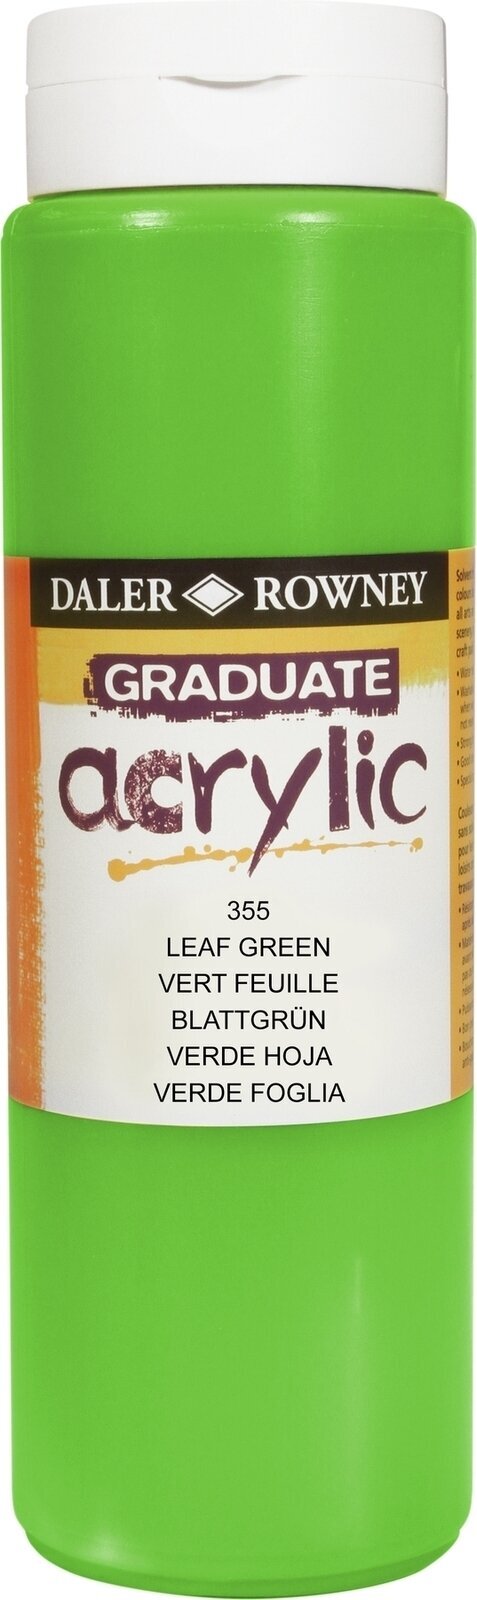 Akrylmaling Daler Rowney Graduate Akrylmaling Leaf Green 500 ml 1 stk.